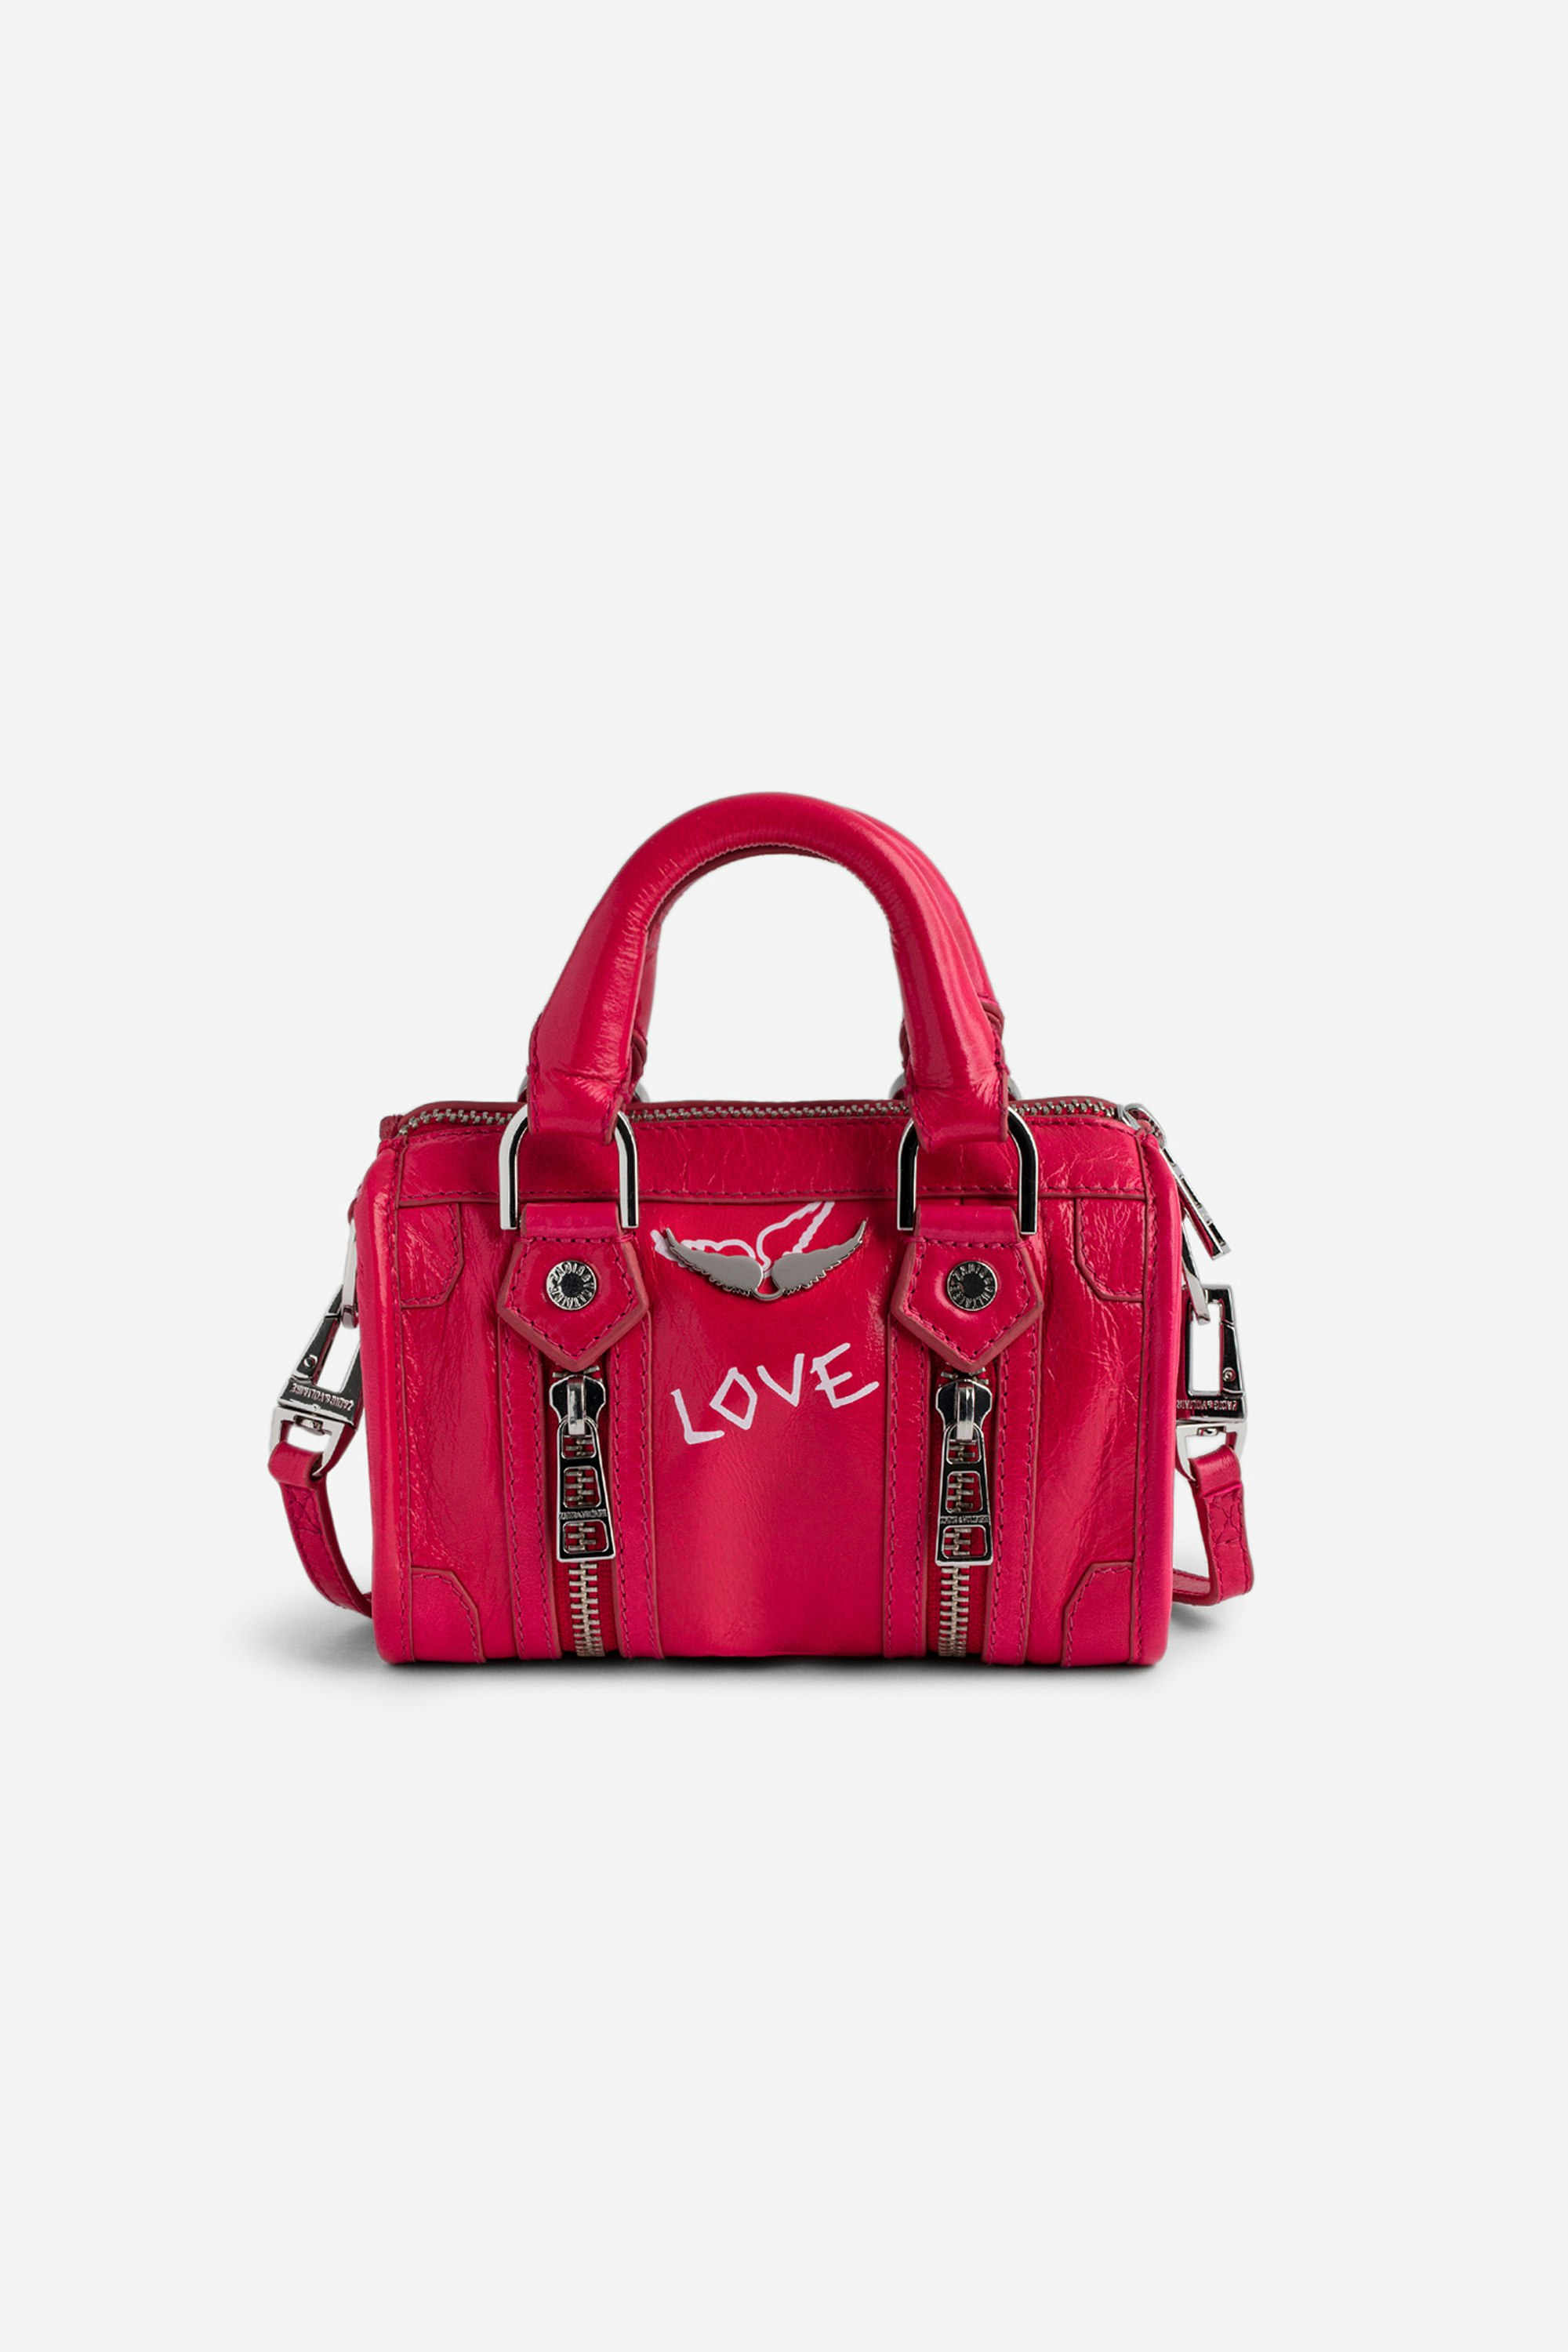 Tasche Sunny Nano #2 Tag - Nano-Tasche aus rosafarbenem Lackleder mit Vintage-Optik mit Henkeln und Schulterriemen mit Flügel- und „Love“-Tags.